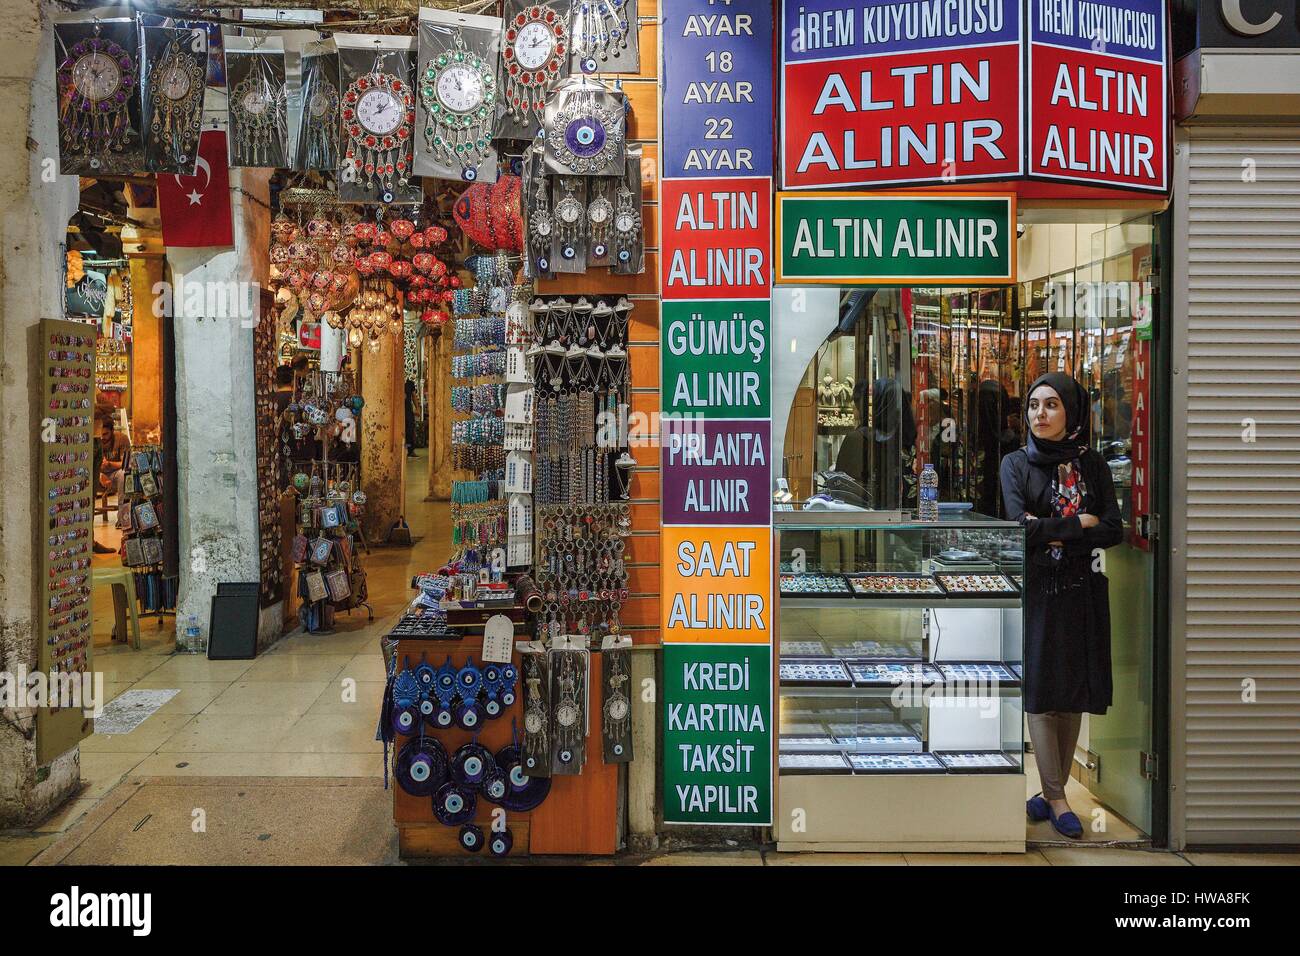 Türkei, Istanbul, Beyazit, Kapali Carsi, Basar, Markthalle, Markt-Szene in einer Gasse des Marktes abgedeckt Grand Bazaar Stockfoto